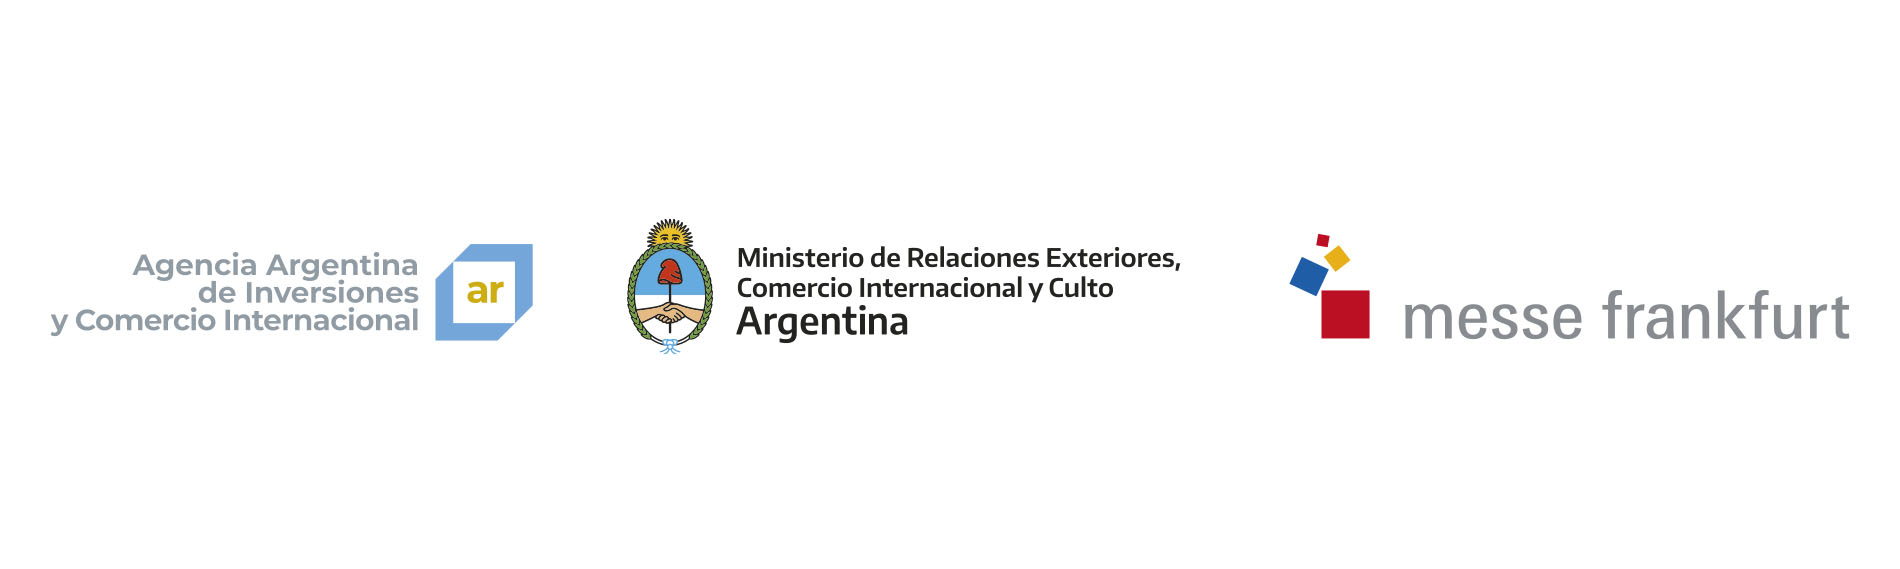 Agencia Argentina de Inversiones y Comercio Internacional - Messe Frankfurt